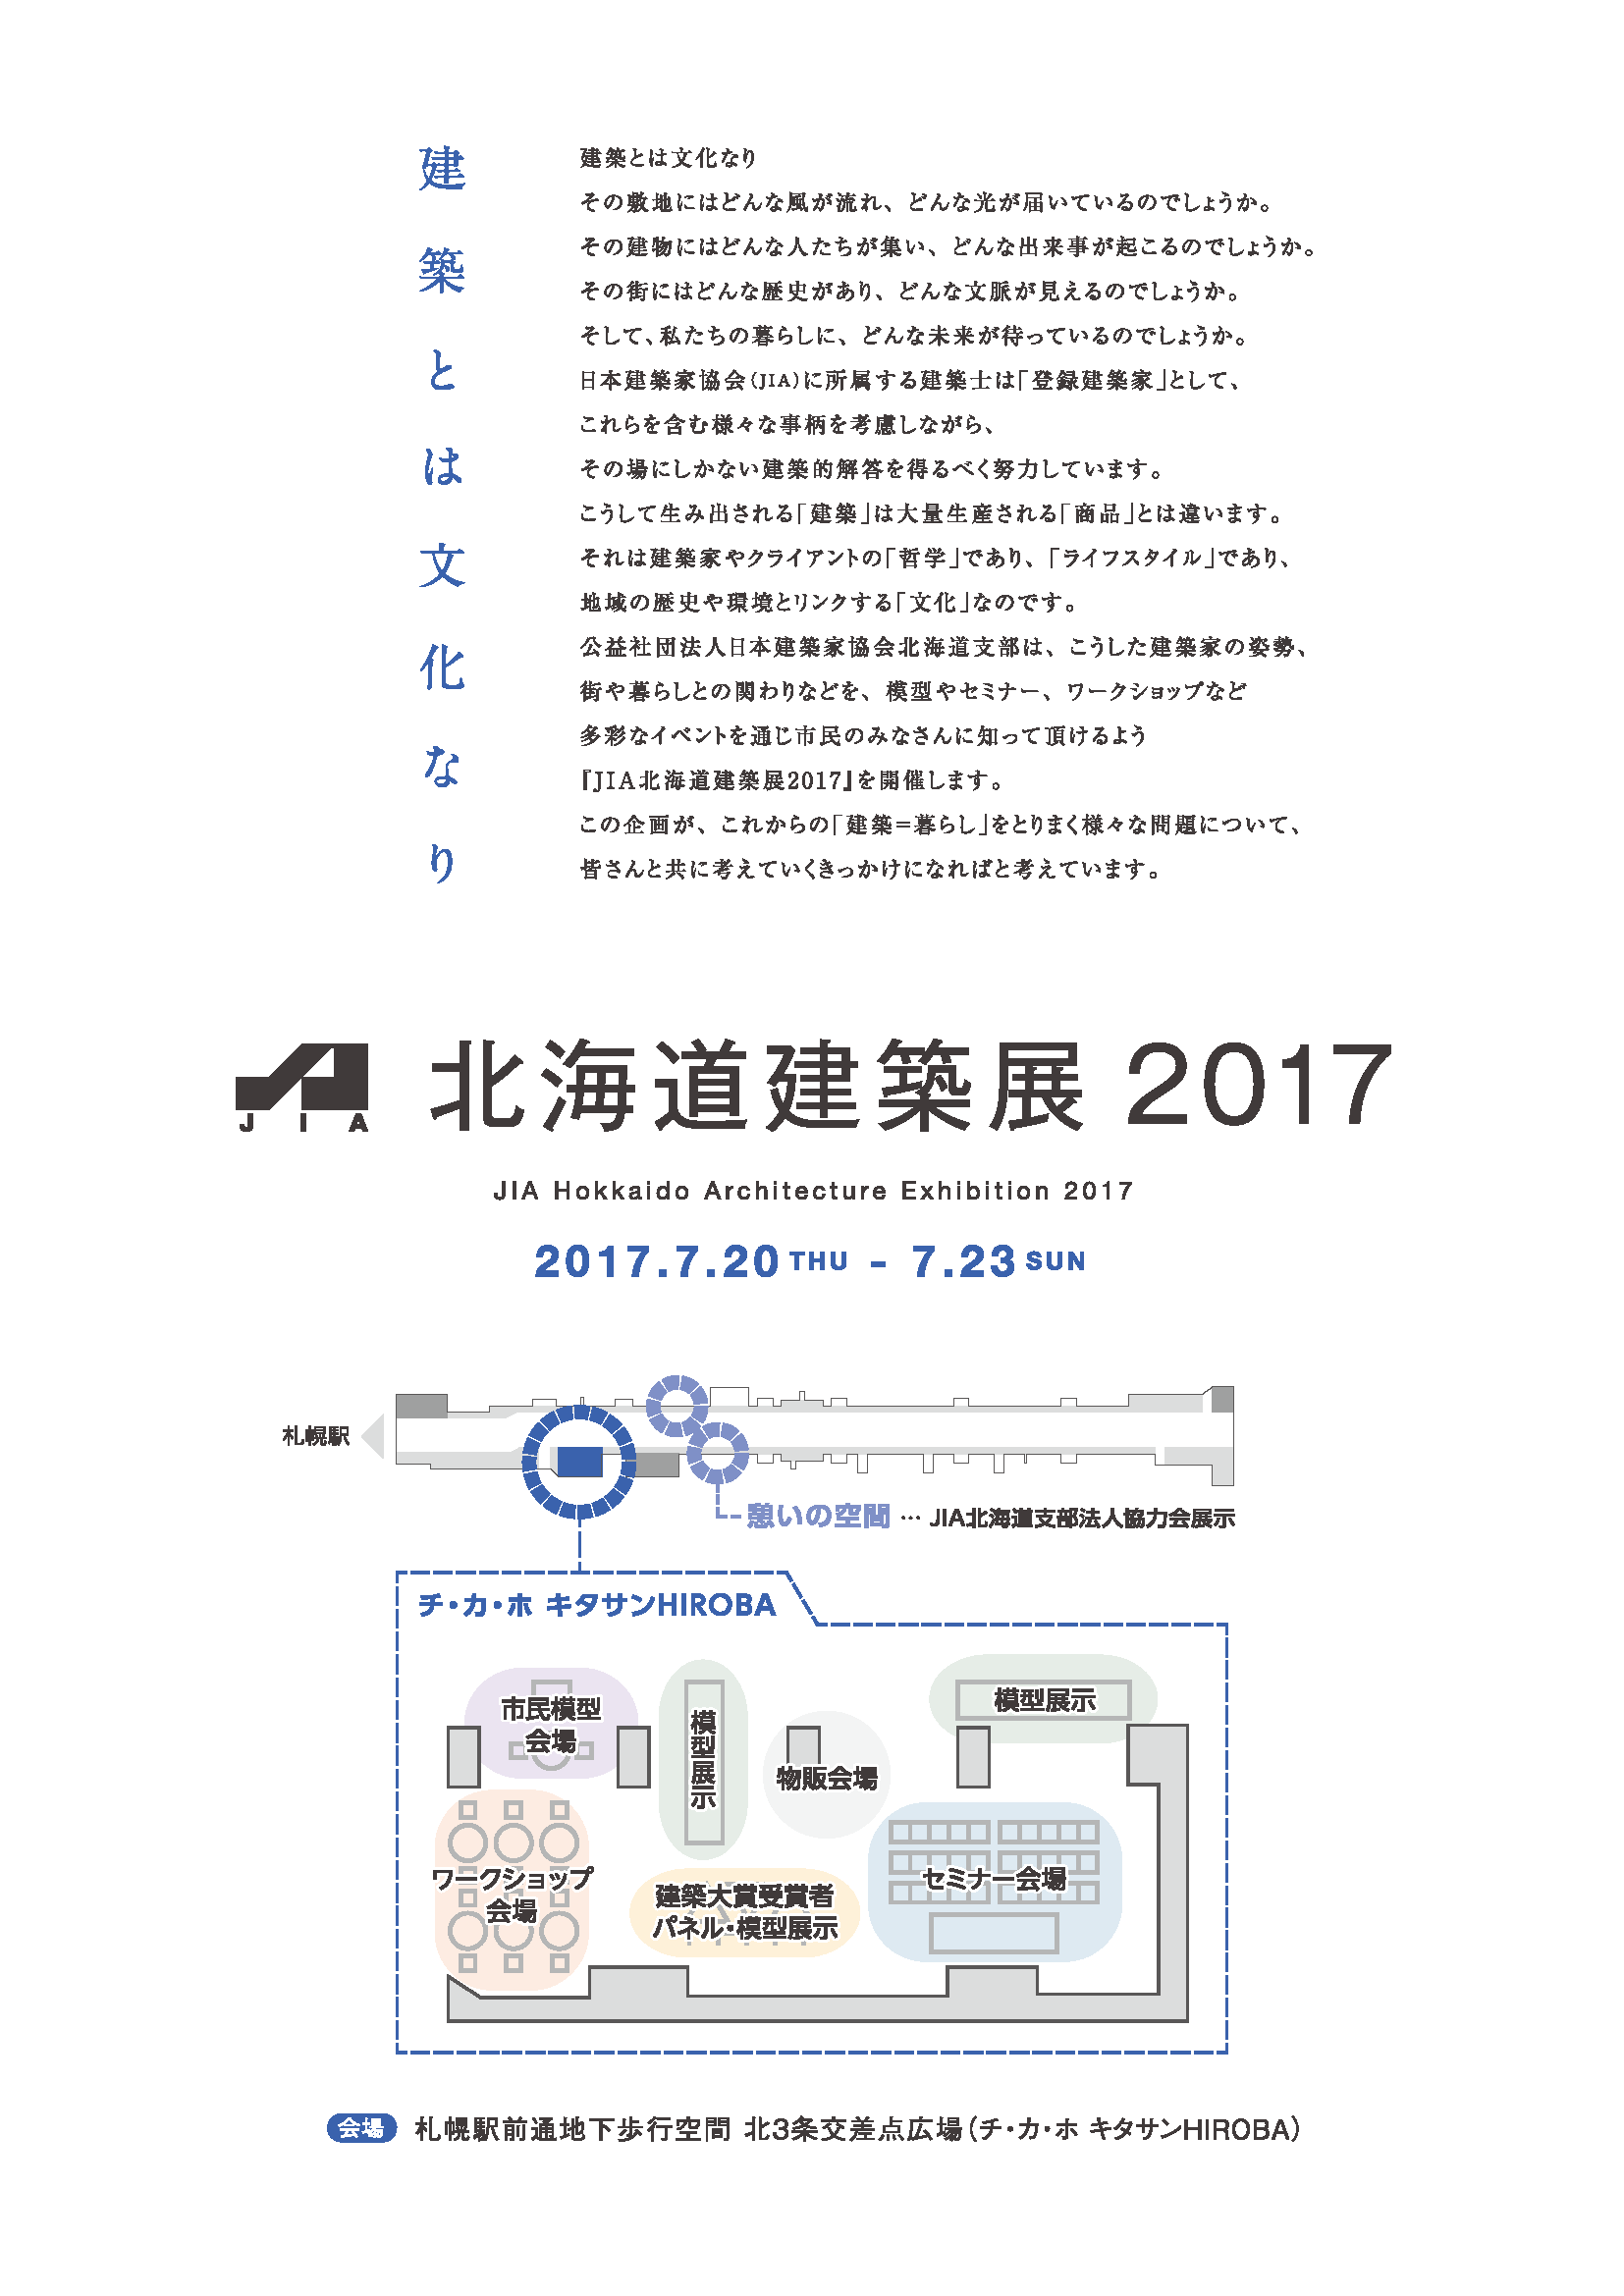 http://www.taokenchiku.com/topics/img/jia2017.png